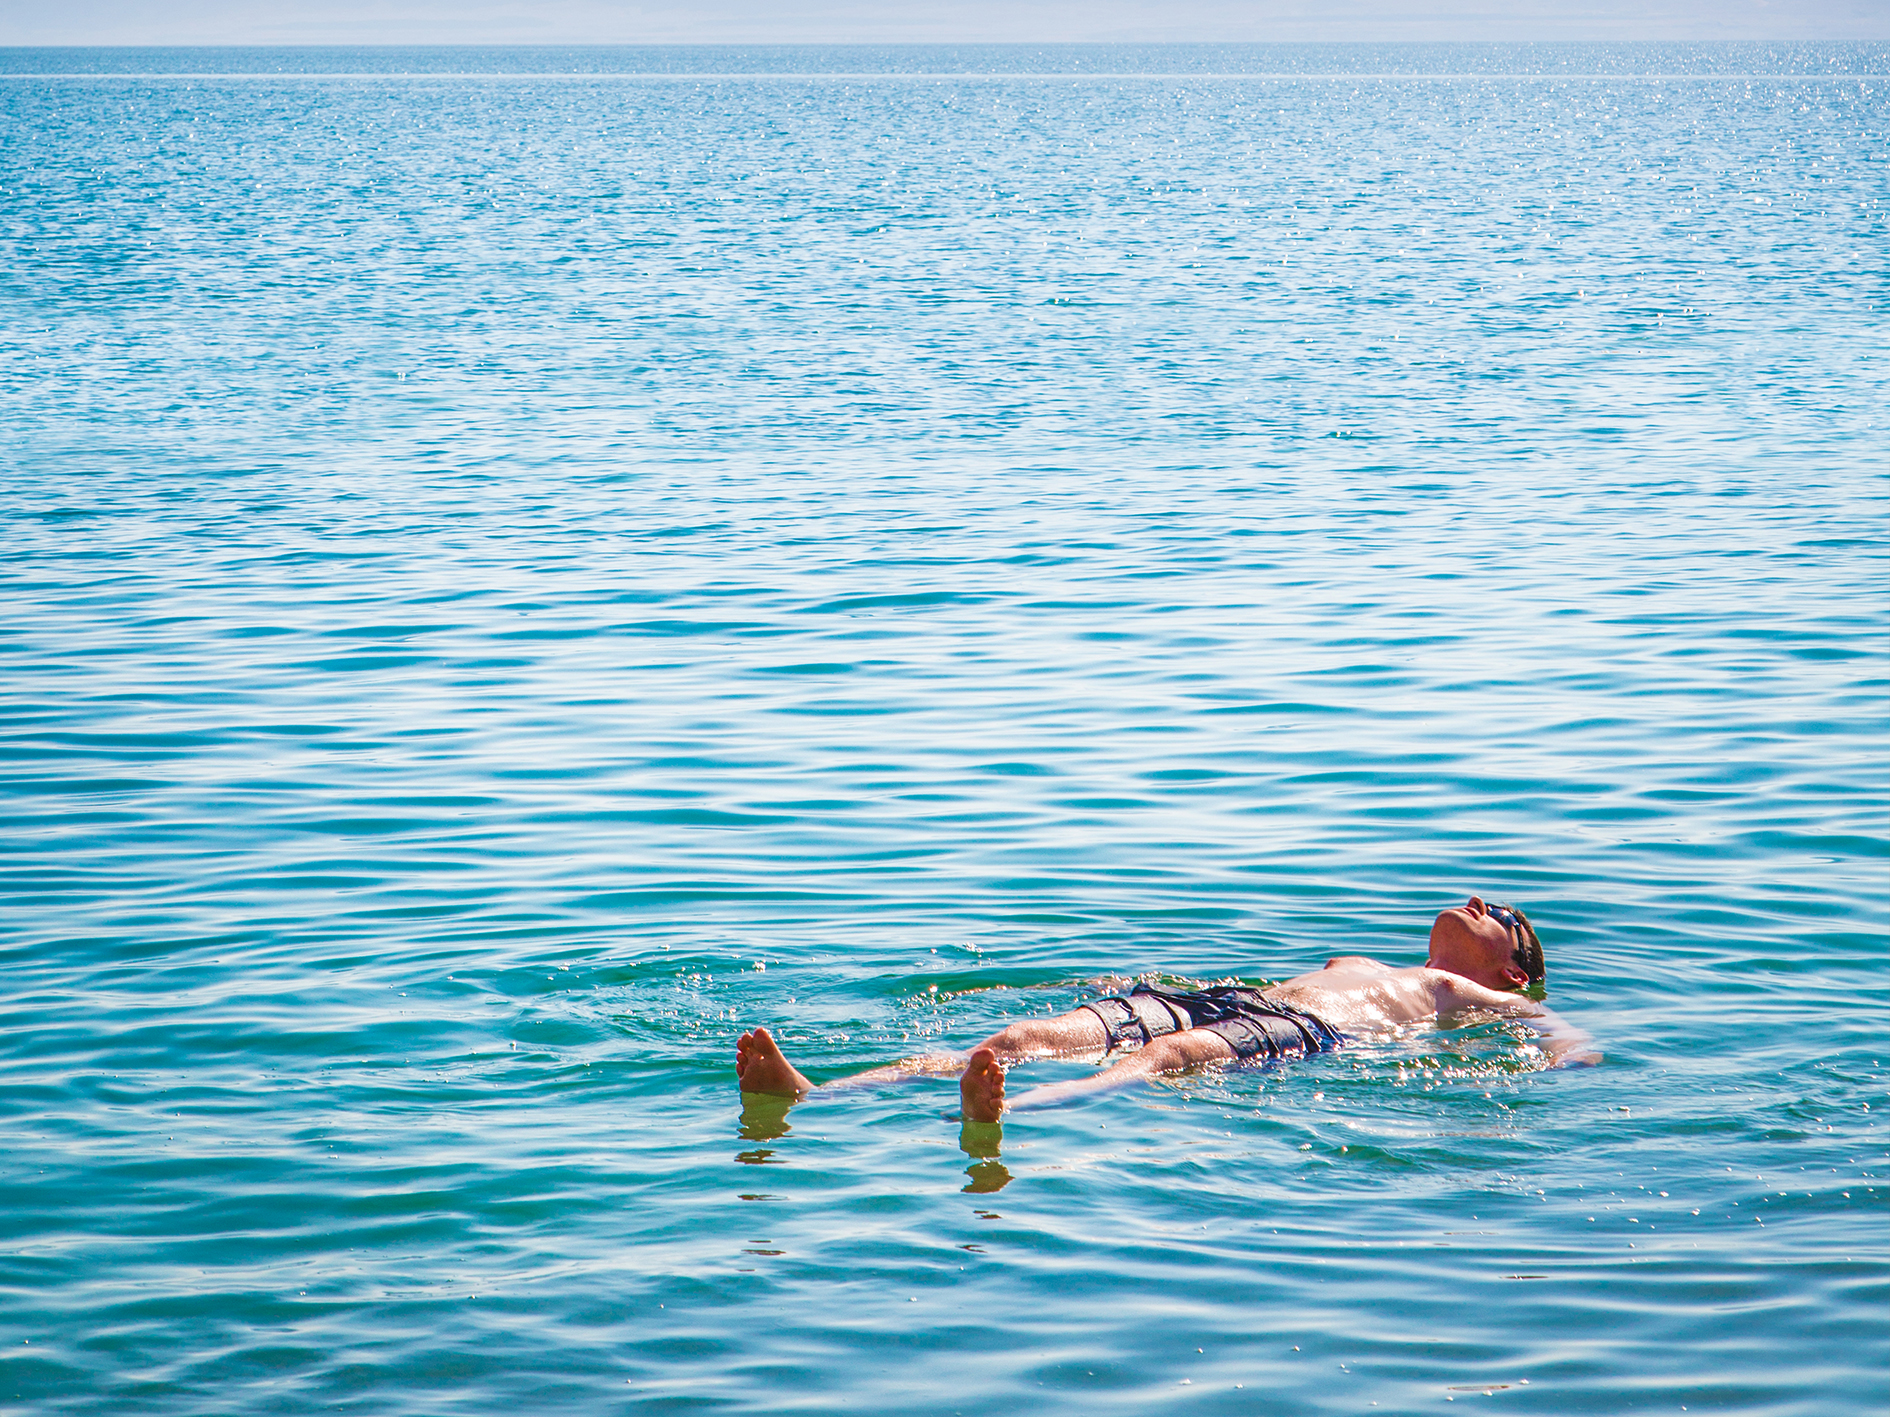 Day 7 - Bethany & the Dead Sea